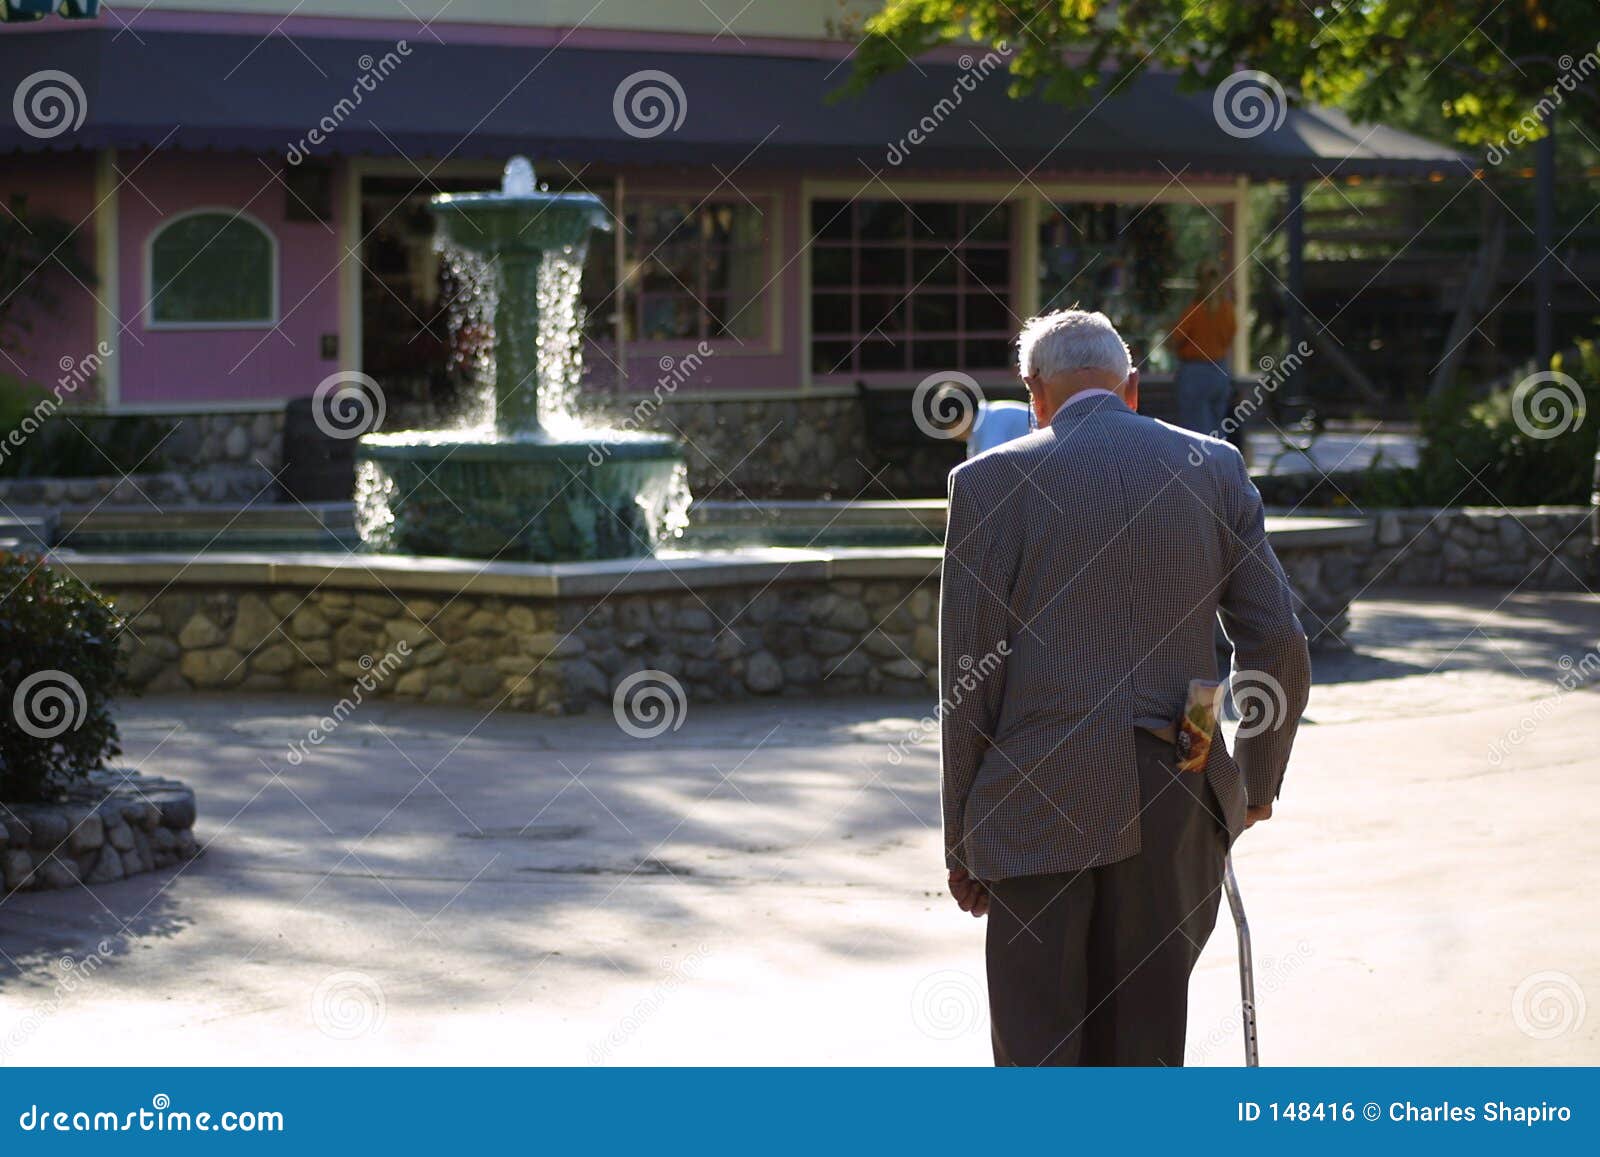 Fontana della gioventù. Fontana di acqua con il giovane gioco del ragazzo e l'uomo anziano che camminano in su ad esso